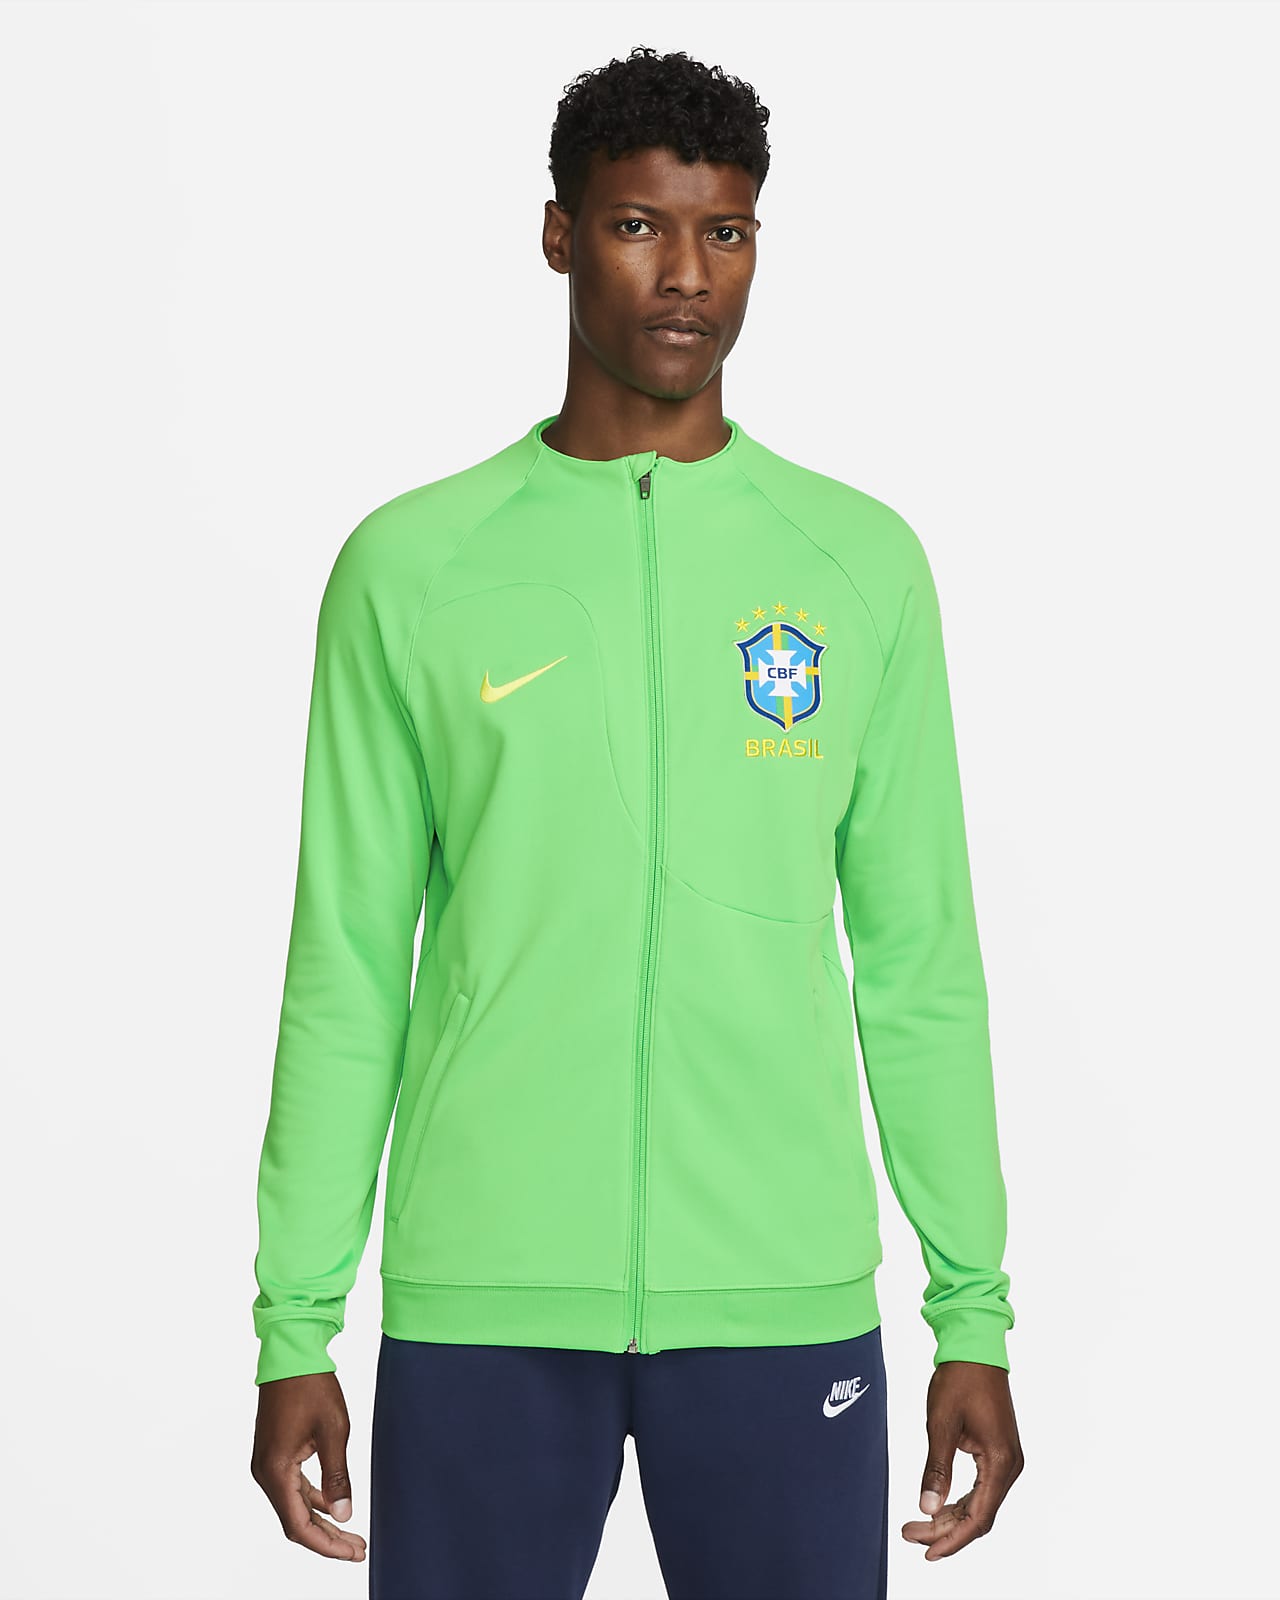 Playera para Fútbol Nike Brasil Academy Pro Mundial 2022